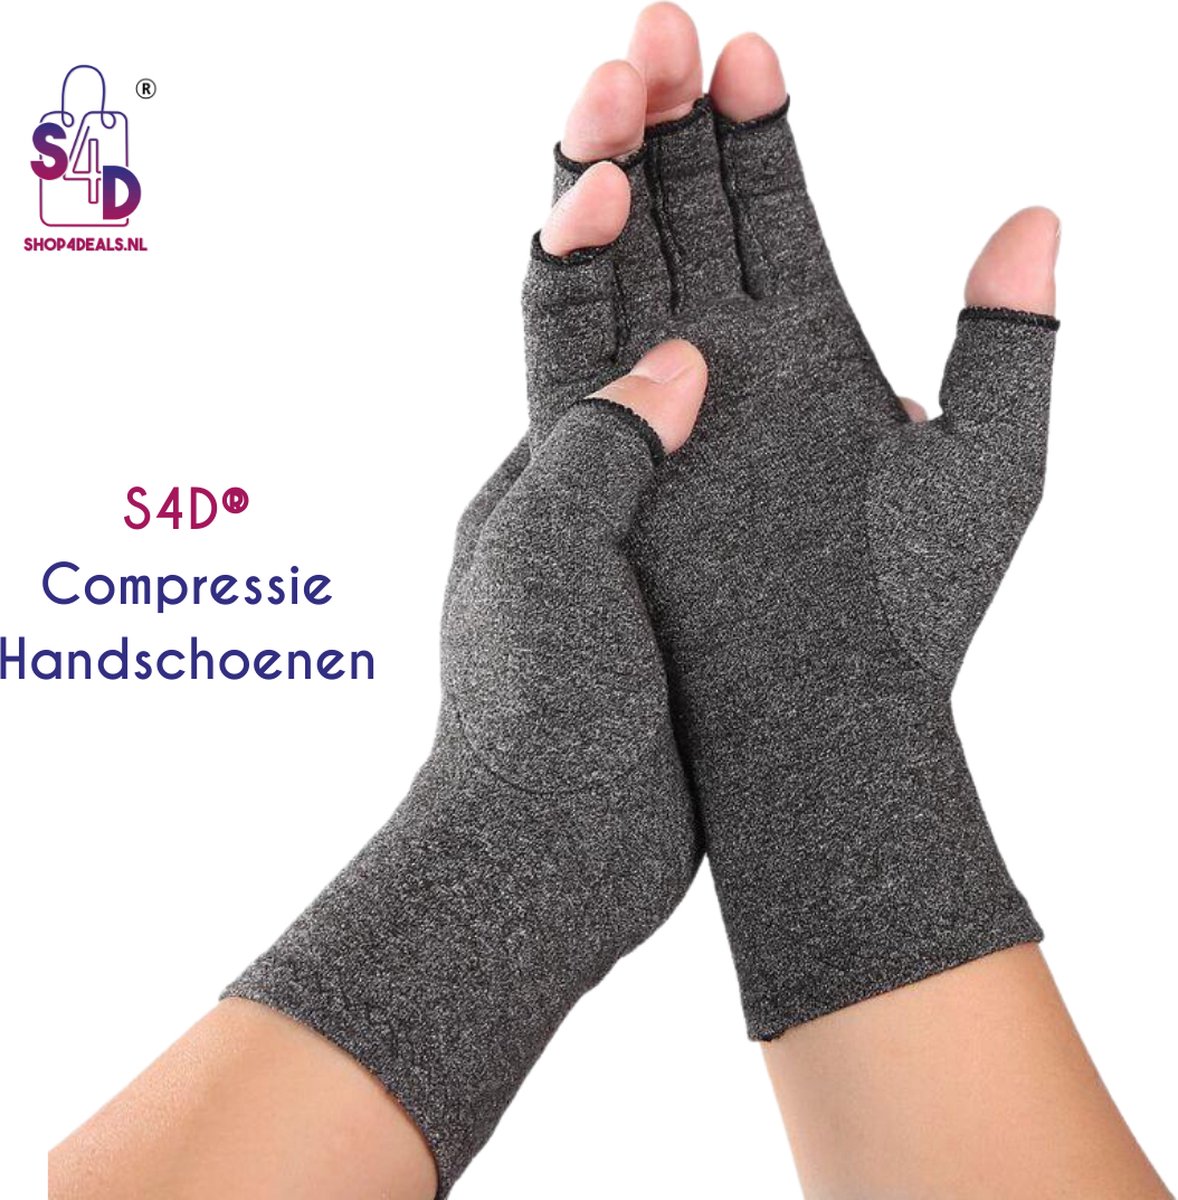 S4D® - Reuma Compressie Handschoenen - Verlichting van Artritis en Reumatische Pijn - Open vingertoppen - Maat L